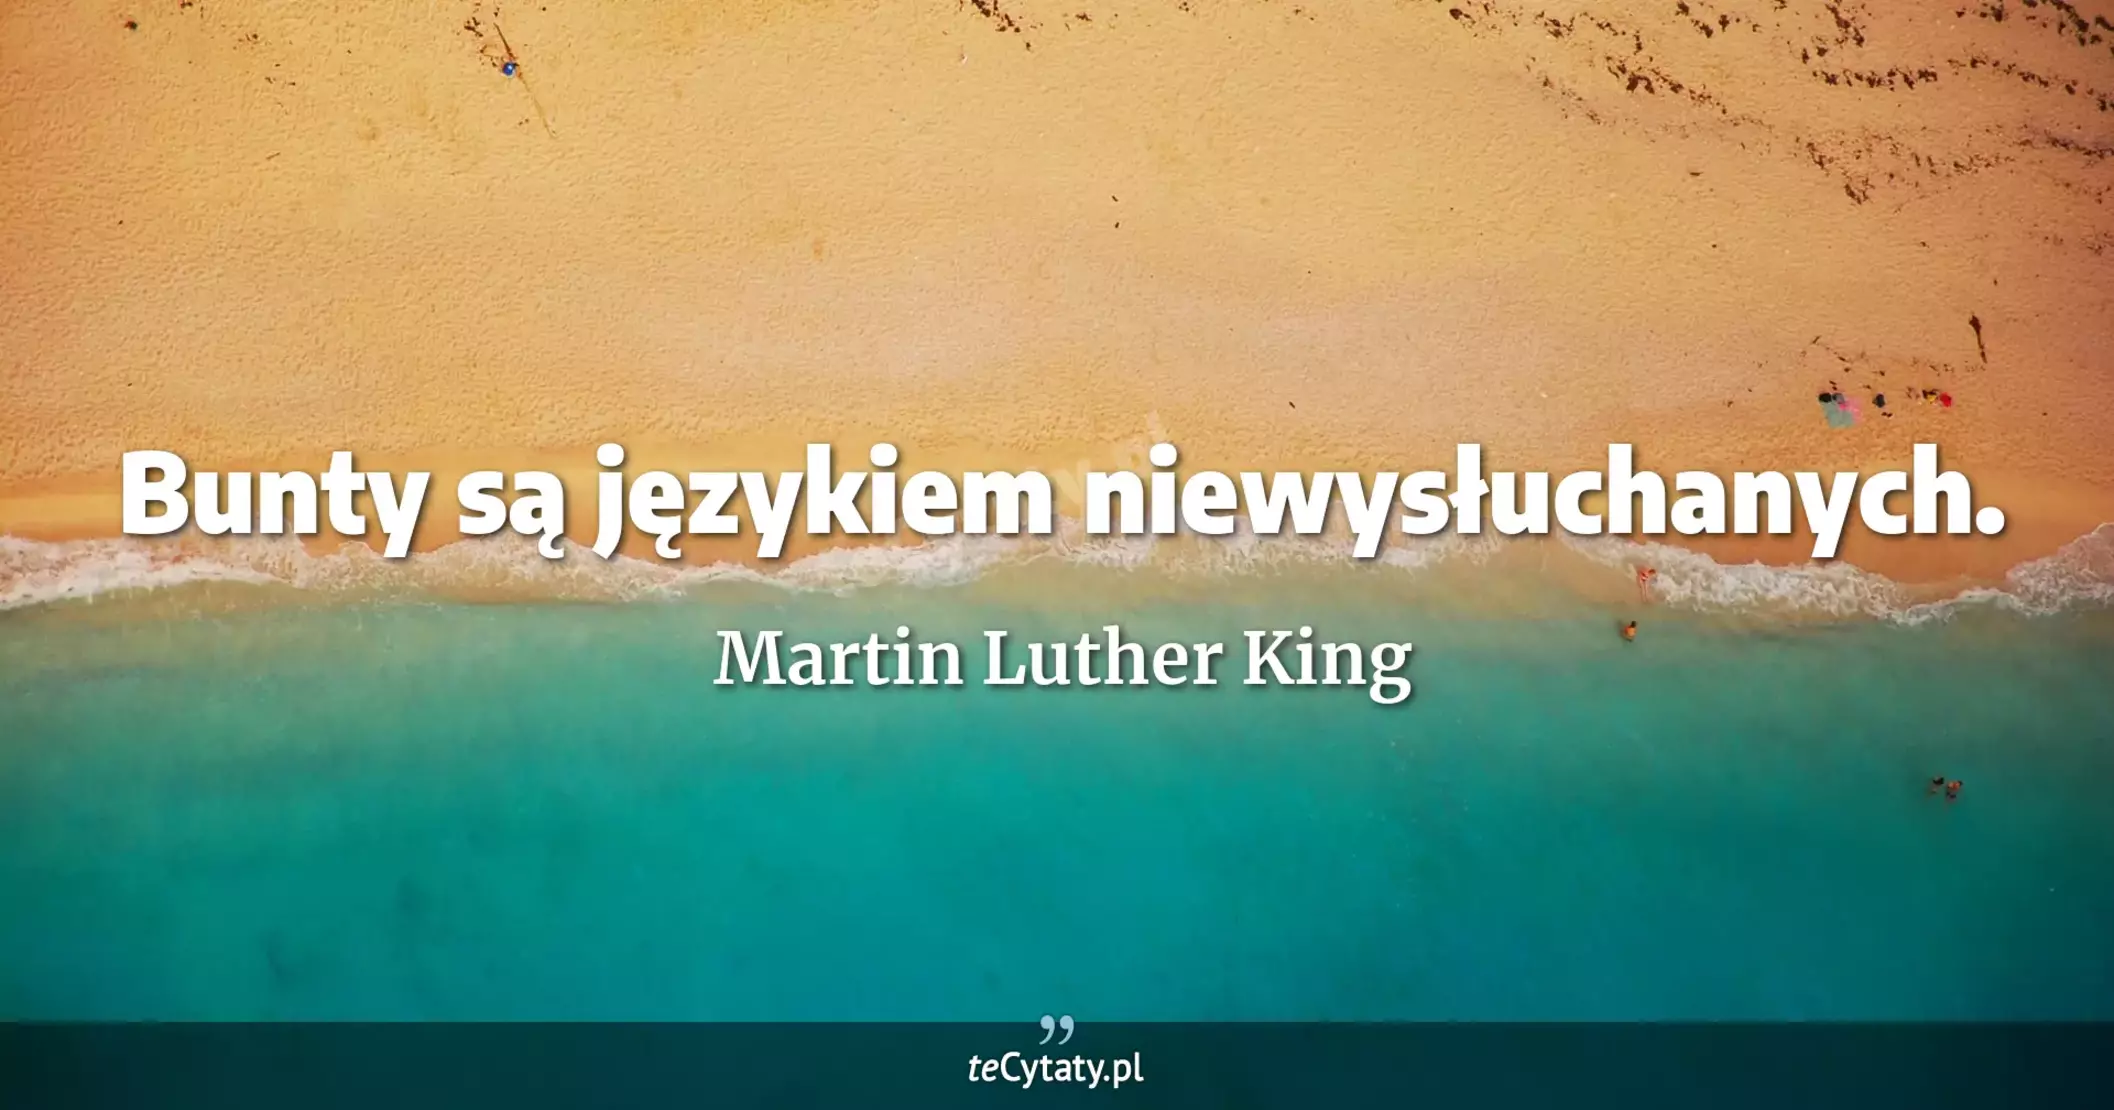 Bunty są językiem niewysłuchanych. - Martin Luther King